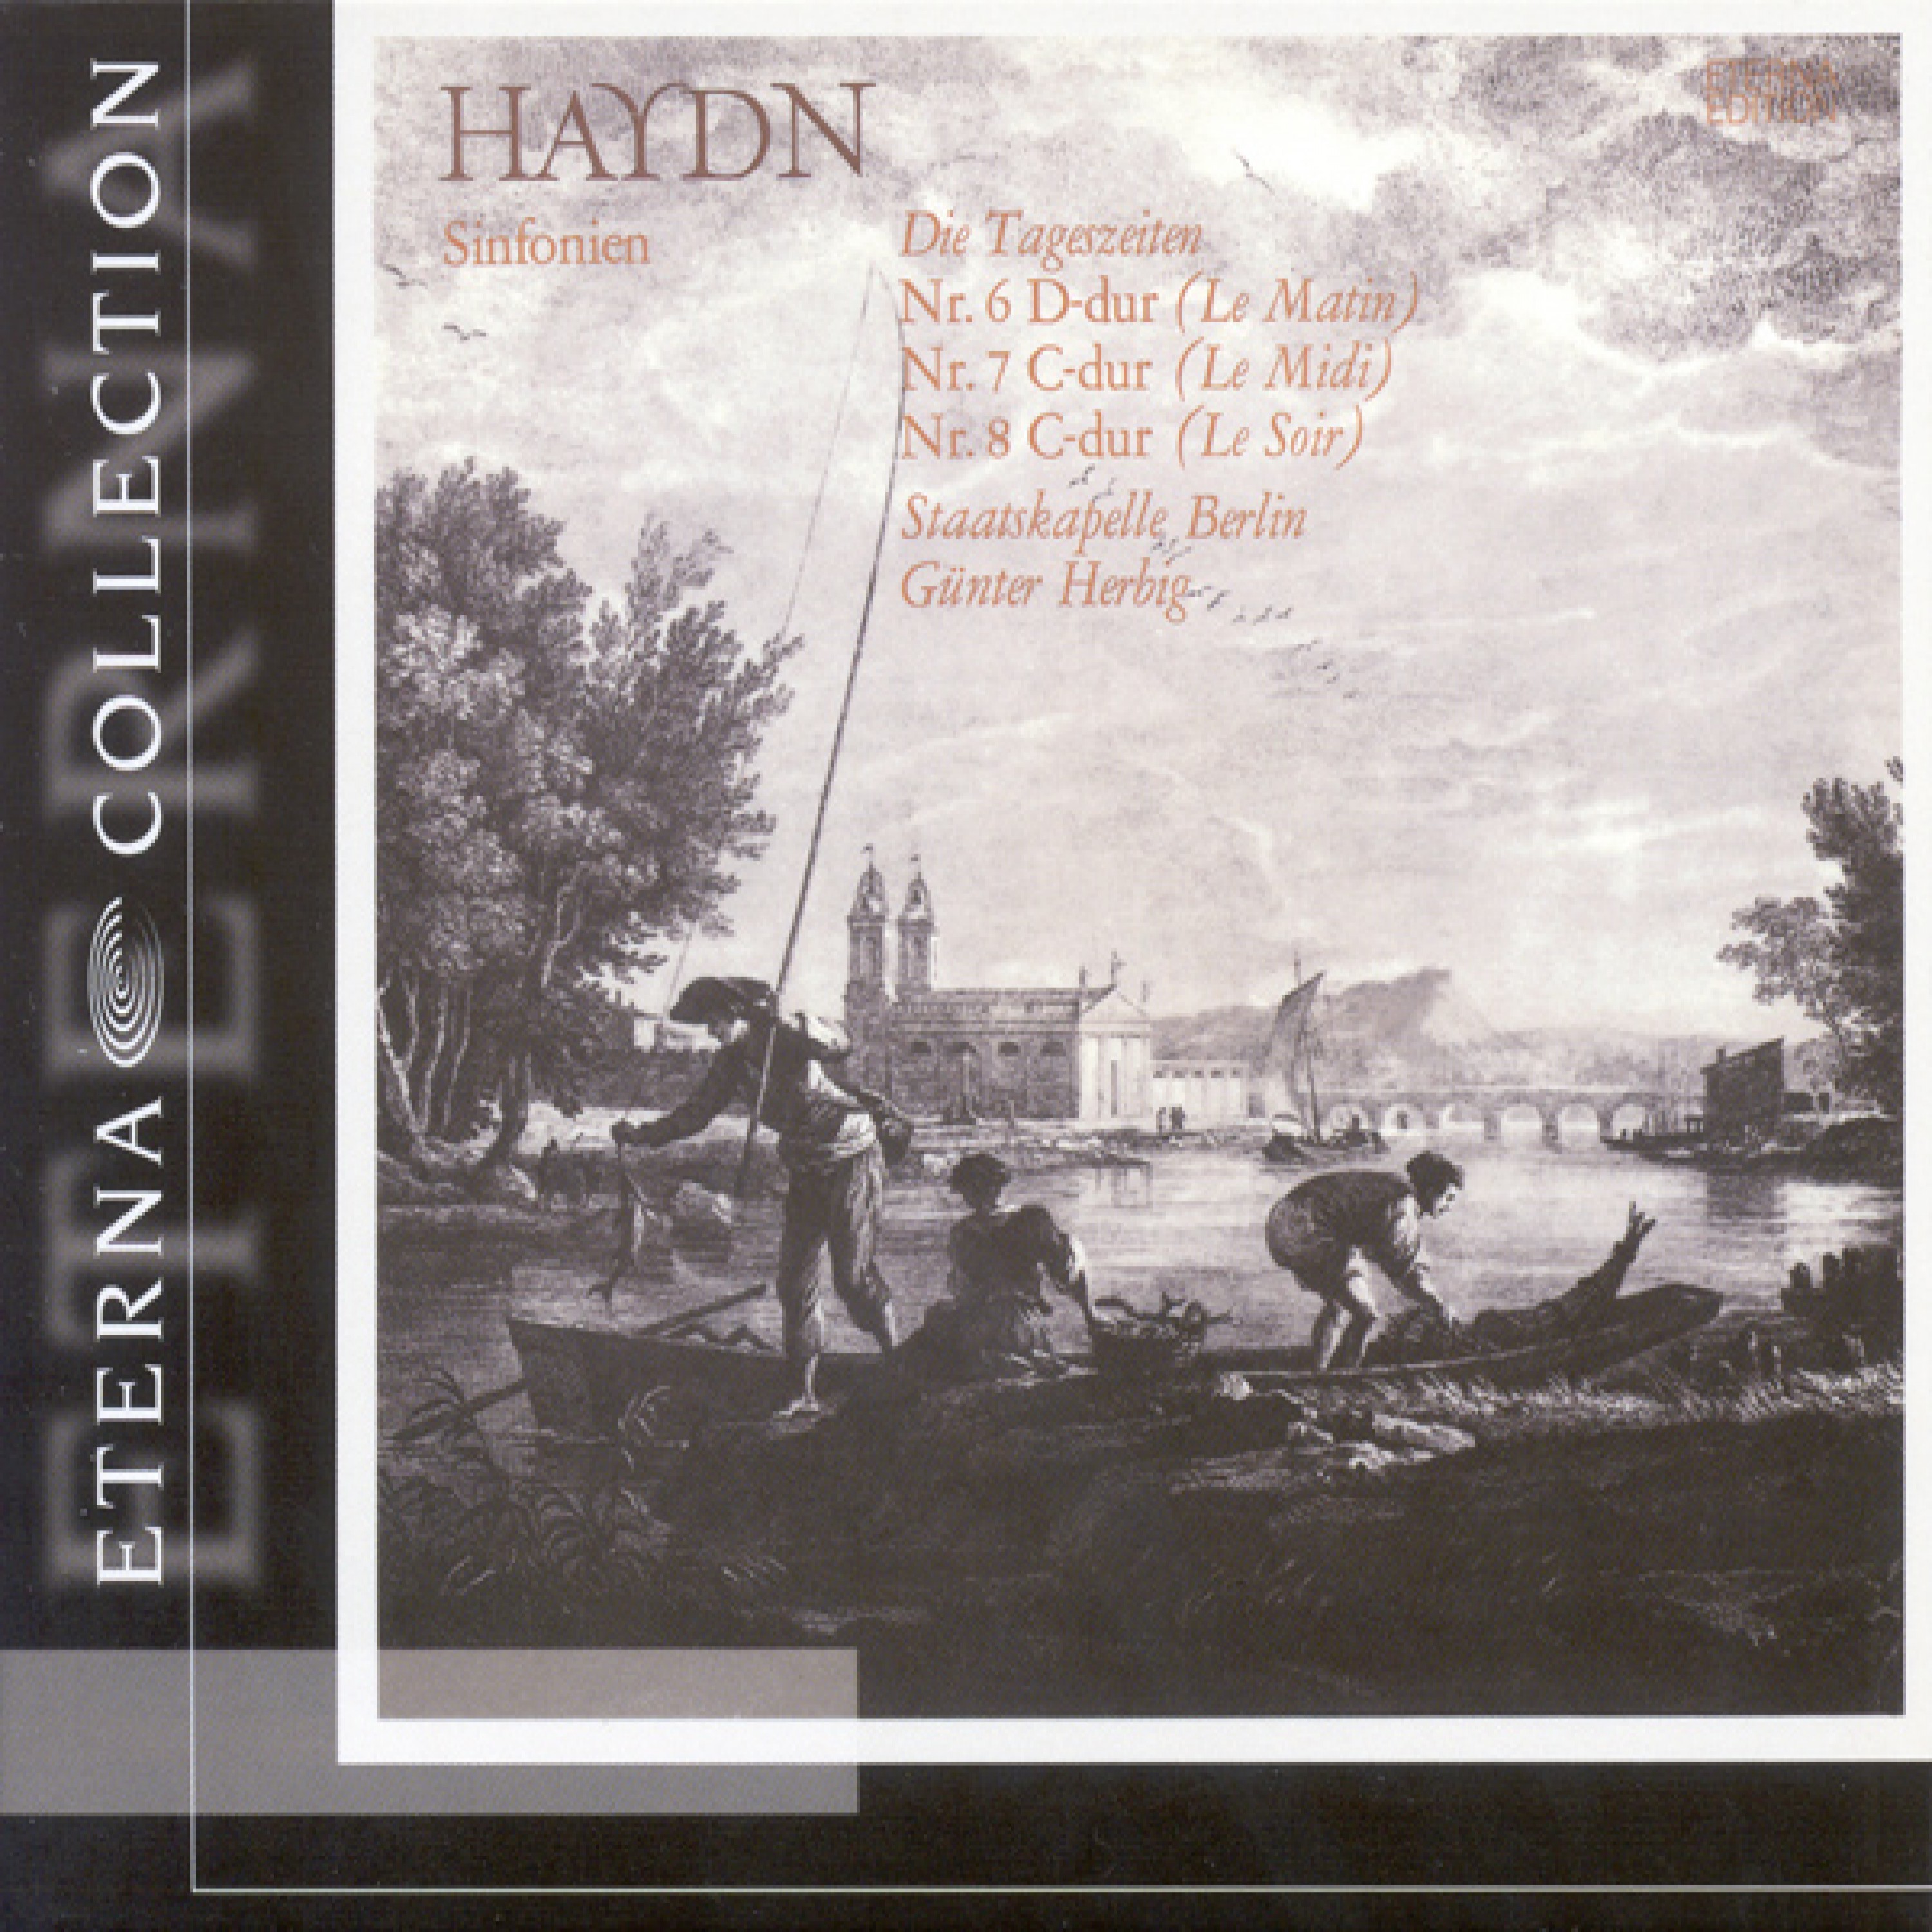 HAYDN, F.J.: Symphonies Nos. 6-8 (Berlin Staatskapelle, Herbig)